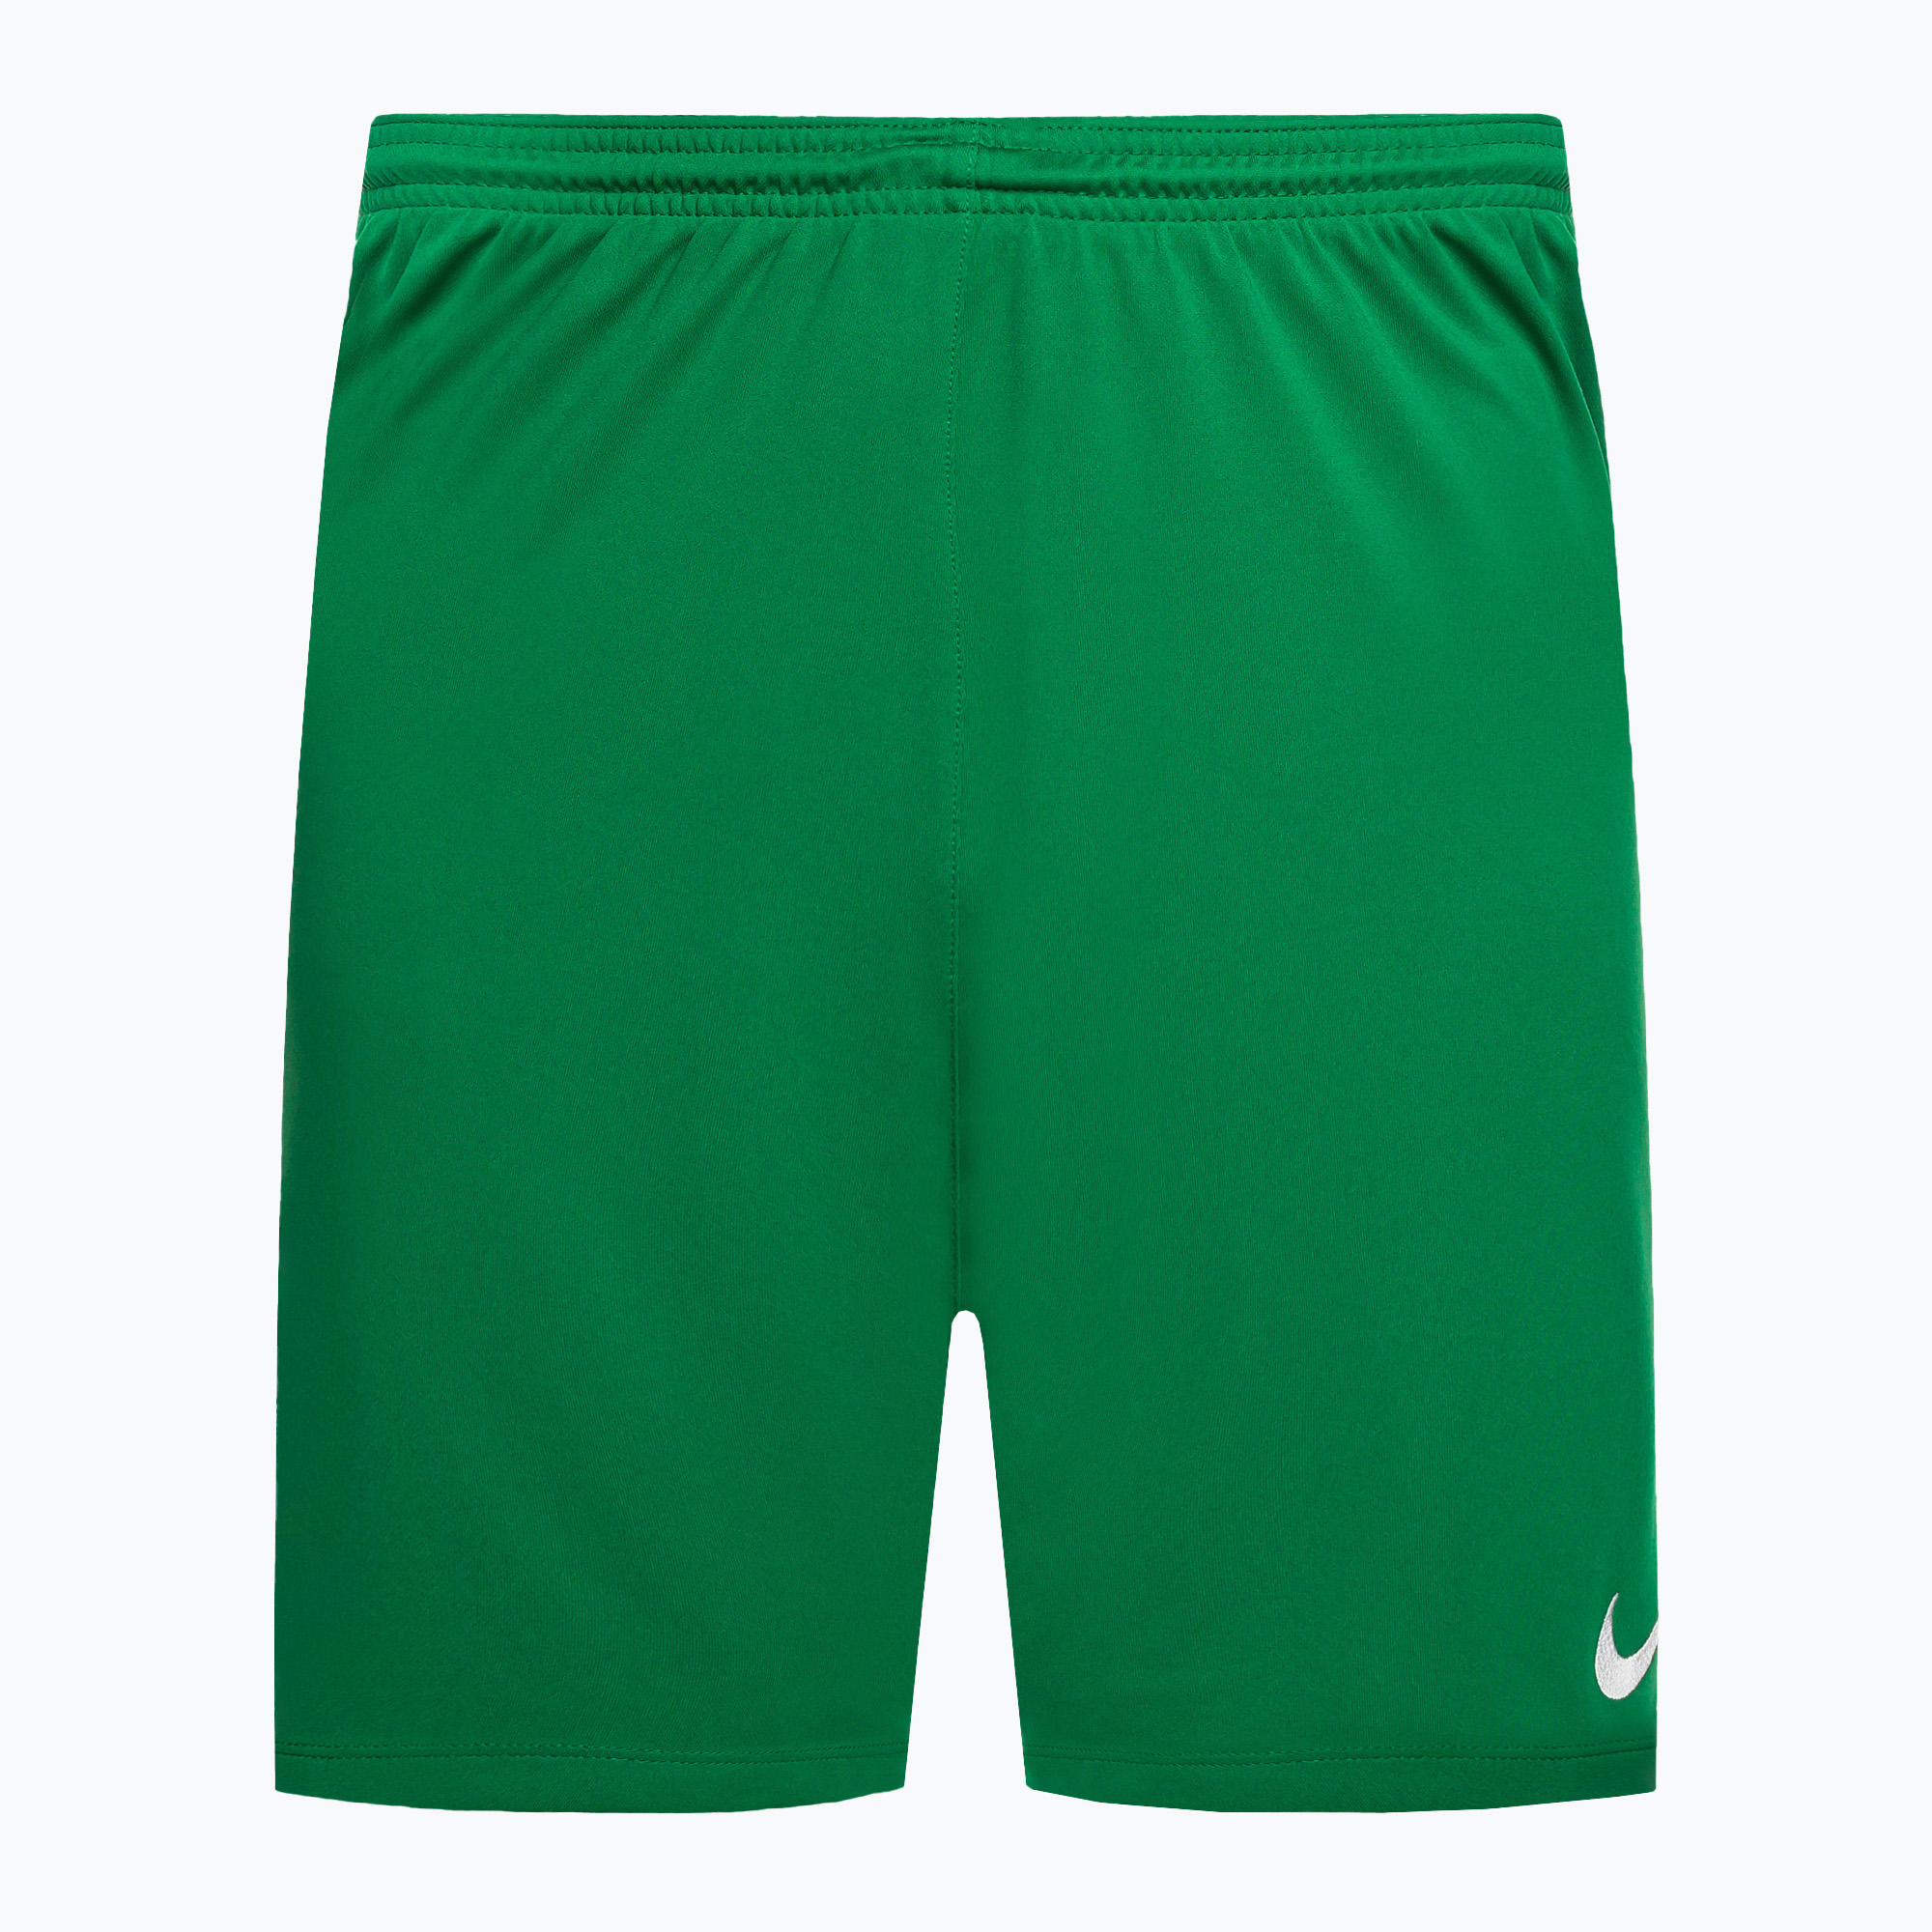 Pánske futbalové šortky Nike Dry-Fit Park III green BV6855-302